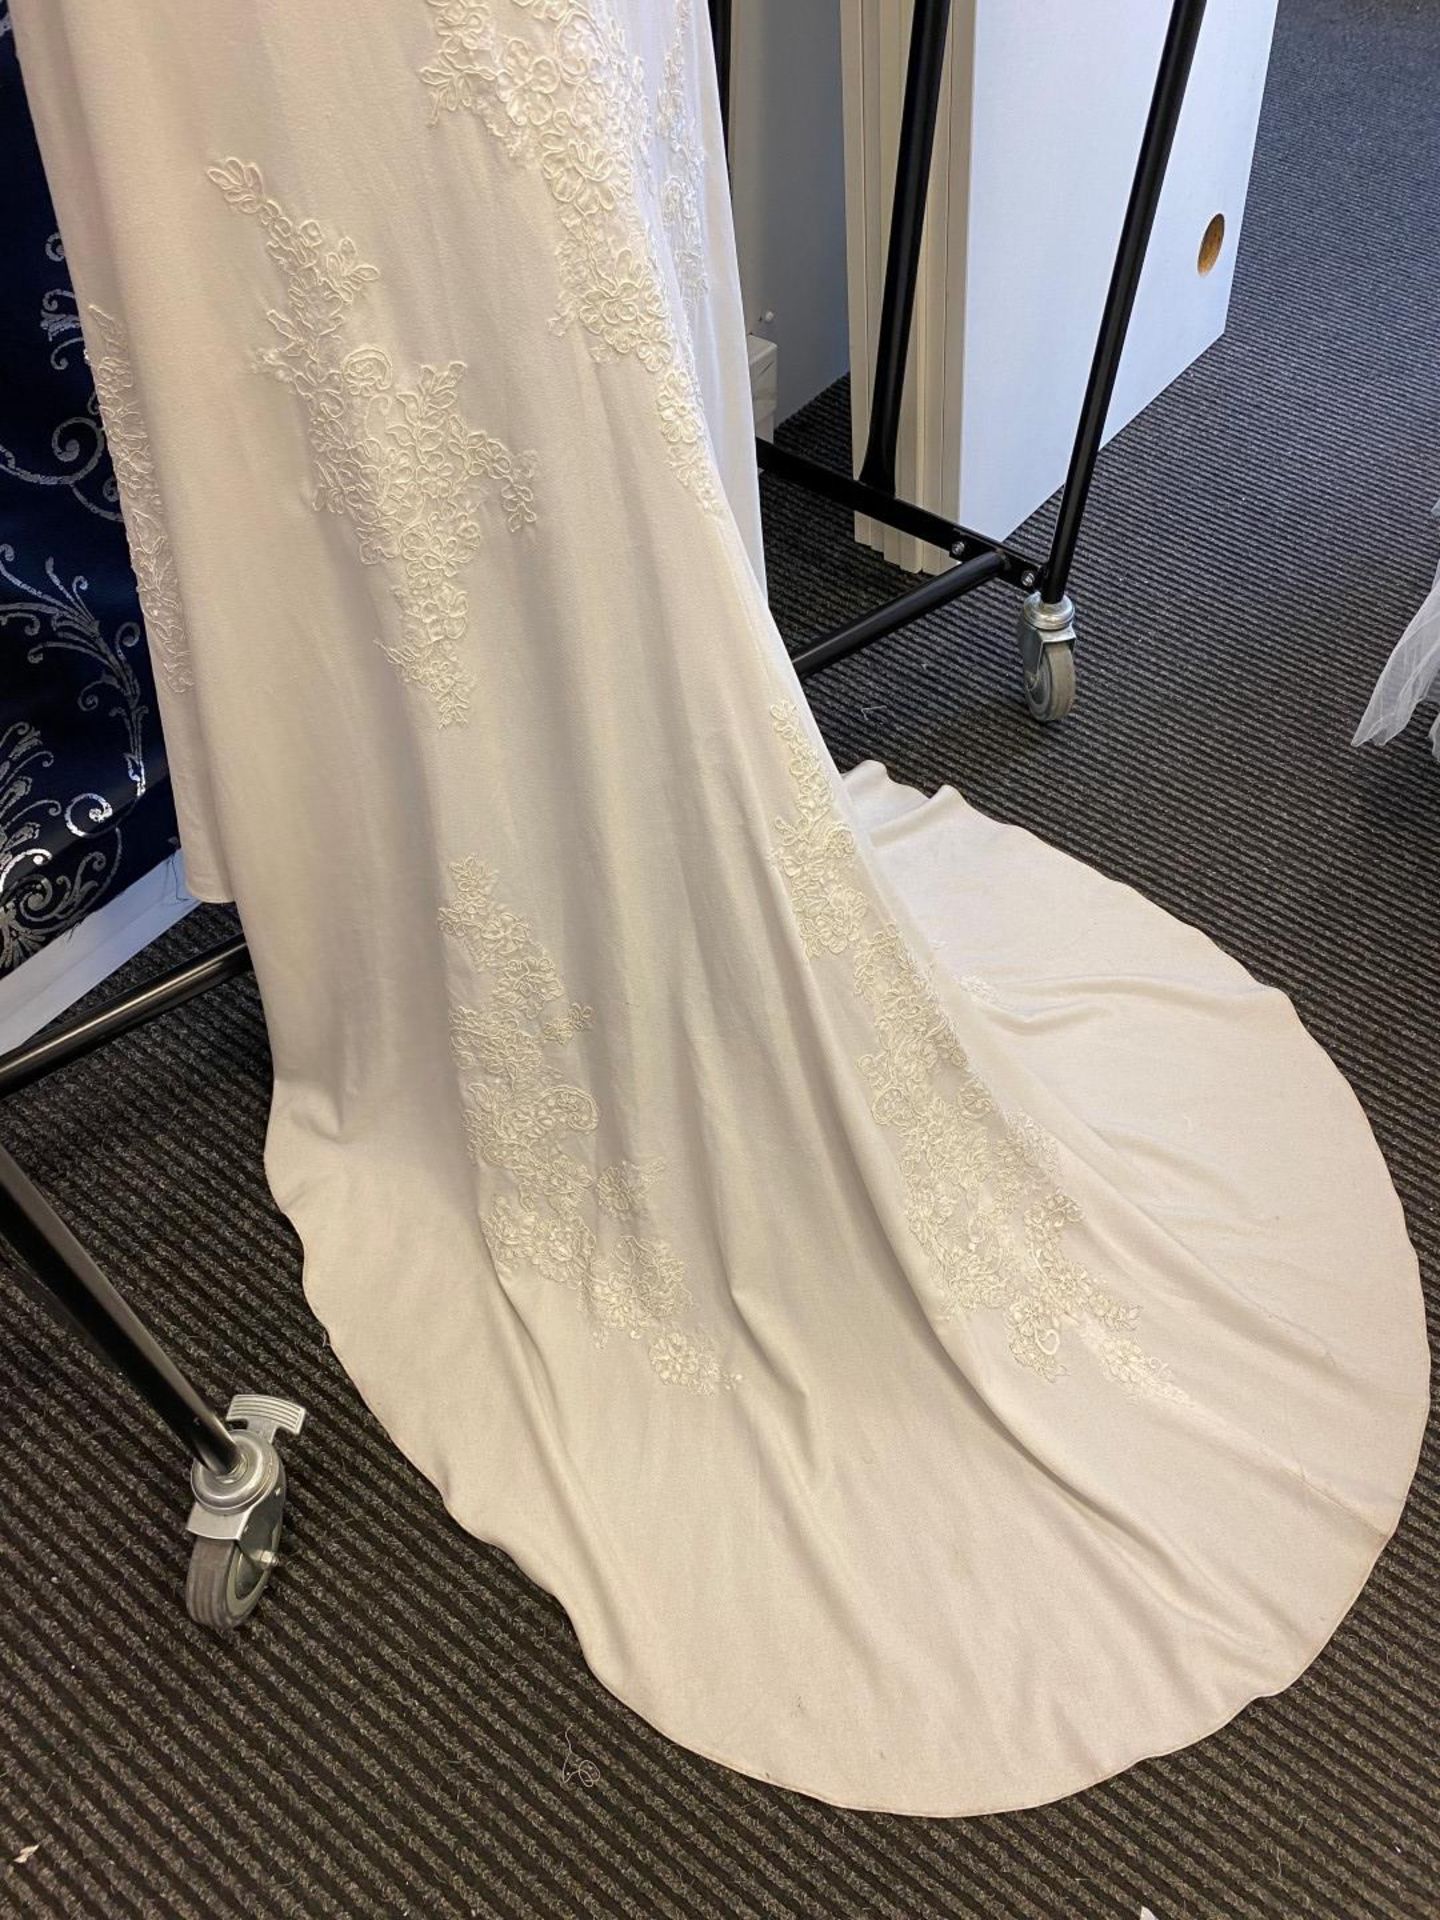 1 x MORI LEE Stunning Chiffon & Lace Biased Cut Designer Wedding Dress Bridal Gown RRP £1,500 UK 12 - Image 7 of 10